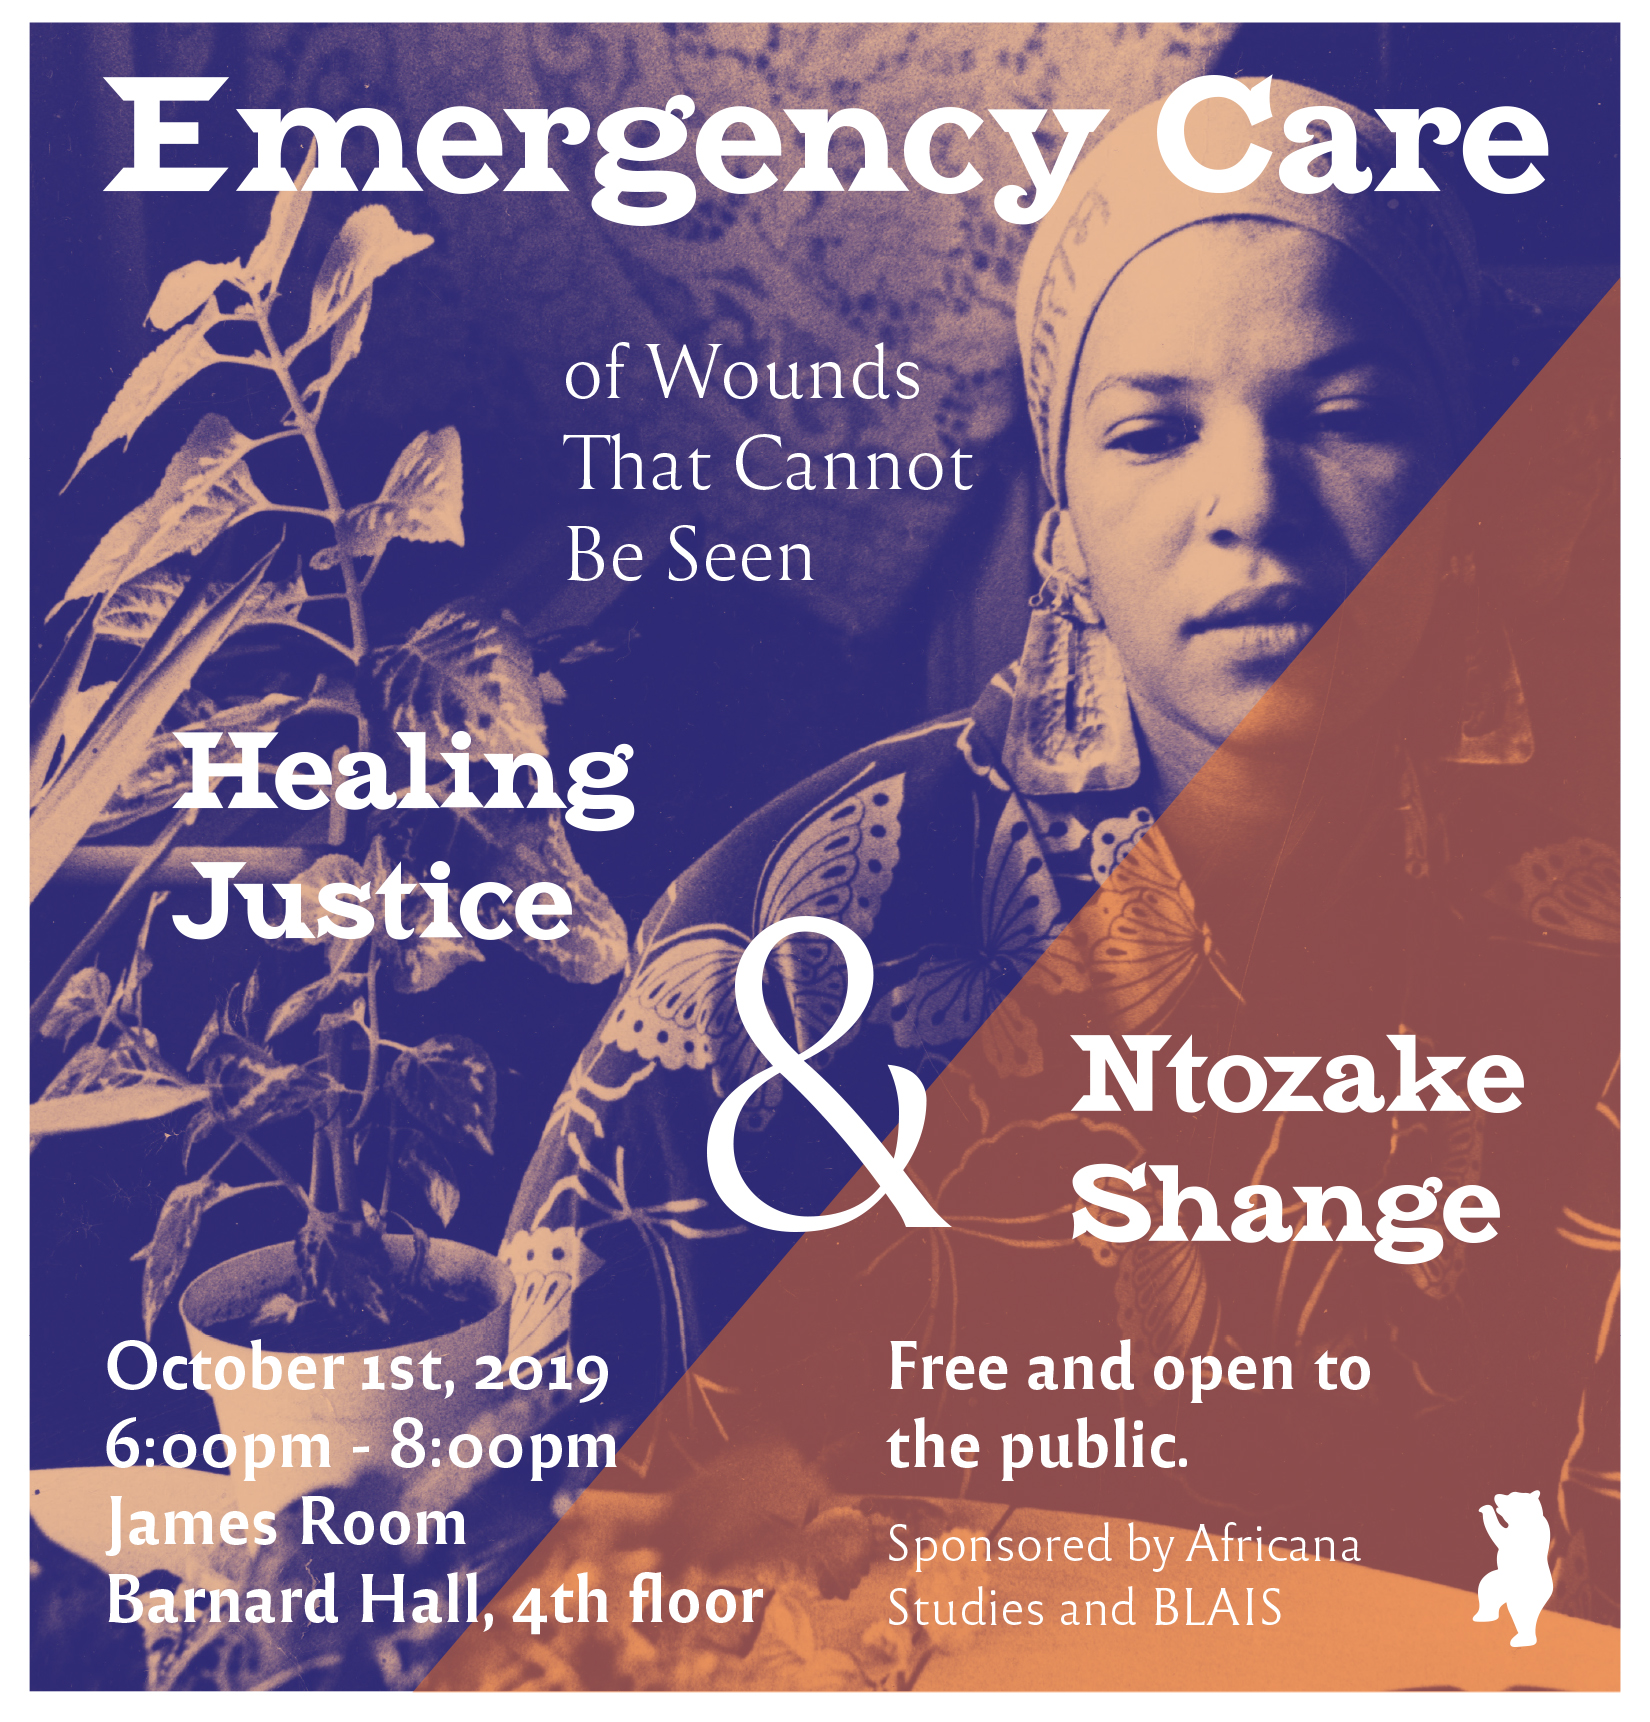 Ntozake Shange Healing Justice Poster